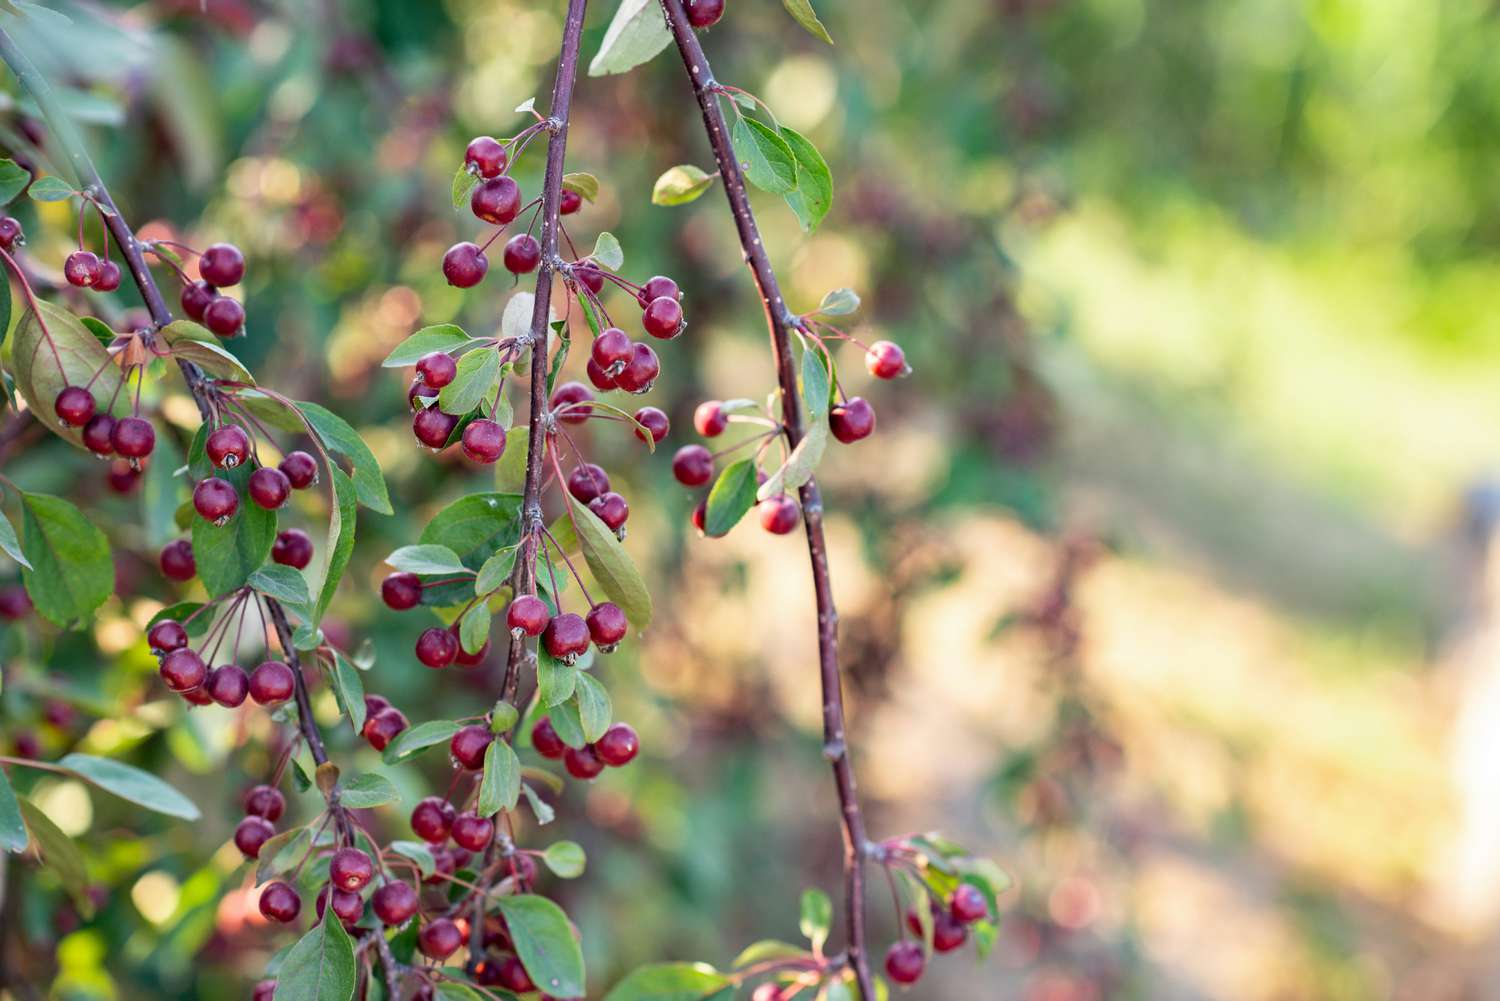 Galho de arbusto de chokeberry vermelho com bagas vermelhas profundas penduradas em close-up